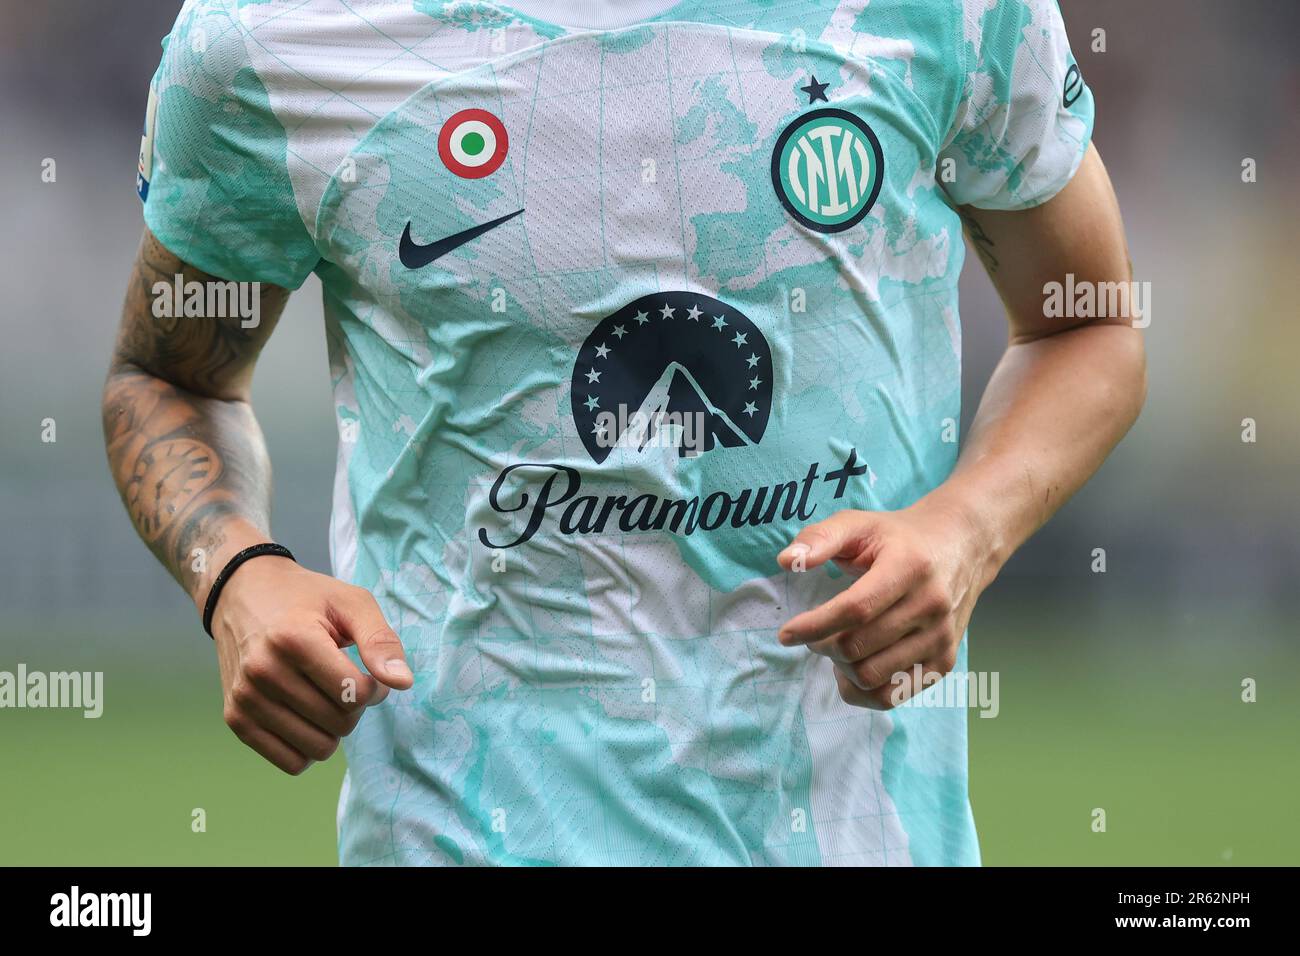 Turín, Italia, 3 de junio de 2023. El nuevo patrocinador del FC Internazionale, Paramount+, es visto por primera vez en la camiseta durante el partido de la Serie A en el Stadio Grande Torino, Turín. El crédito de la imagen debe leer: Jonathan Moscrop / Sportimage Foto de stock